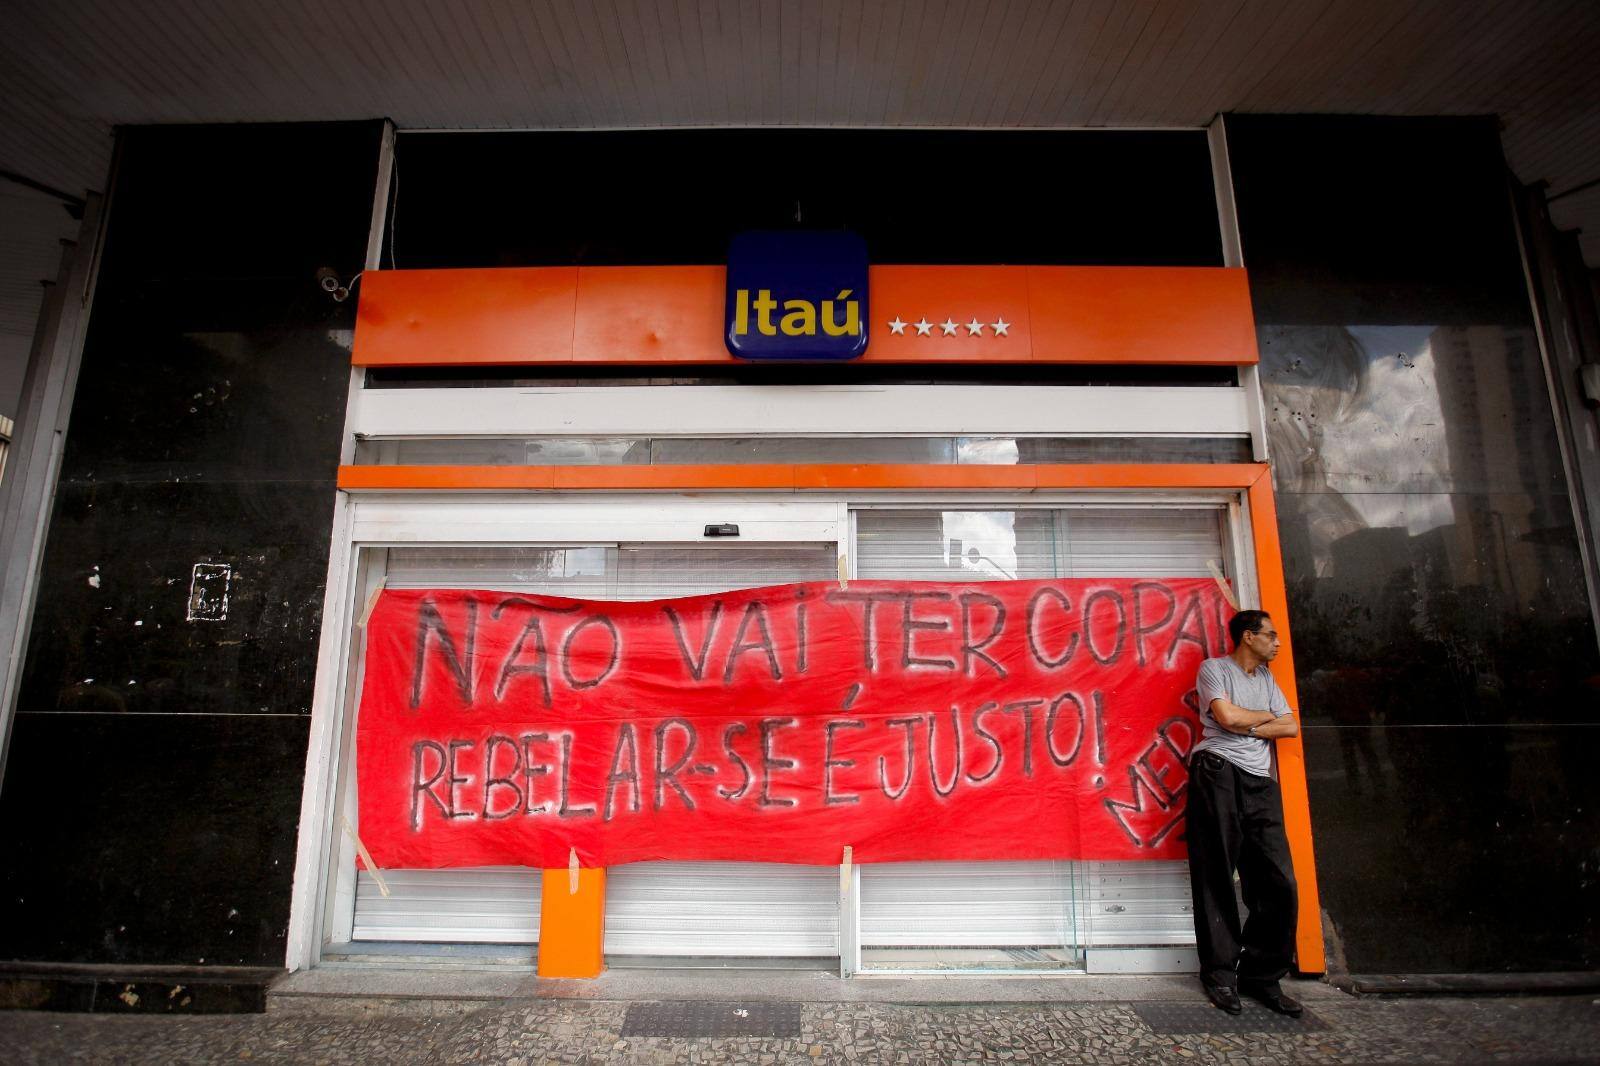 "Não vai ter Copa", diz faixa pregada sobre porta de banco durante protestos de junho de 2013